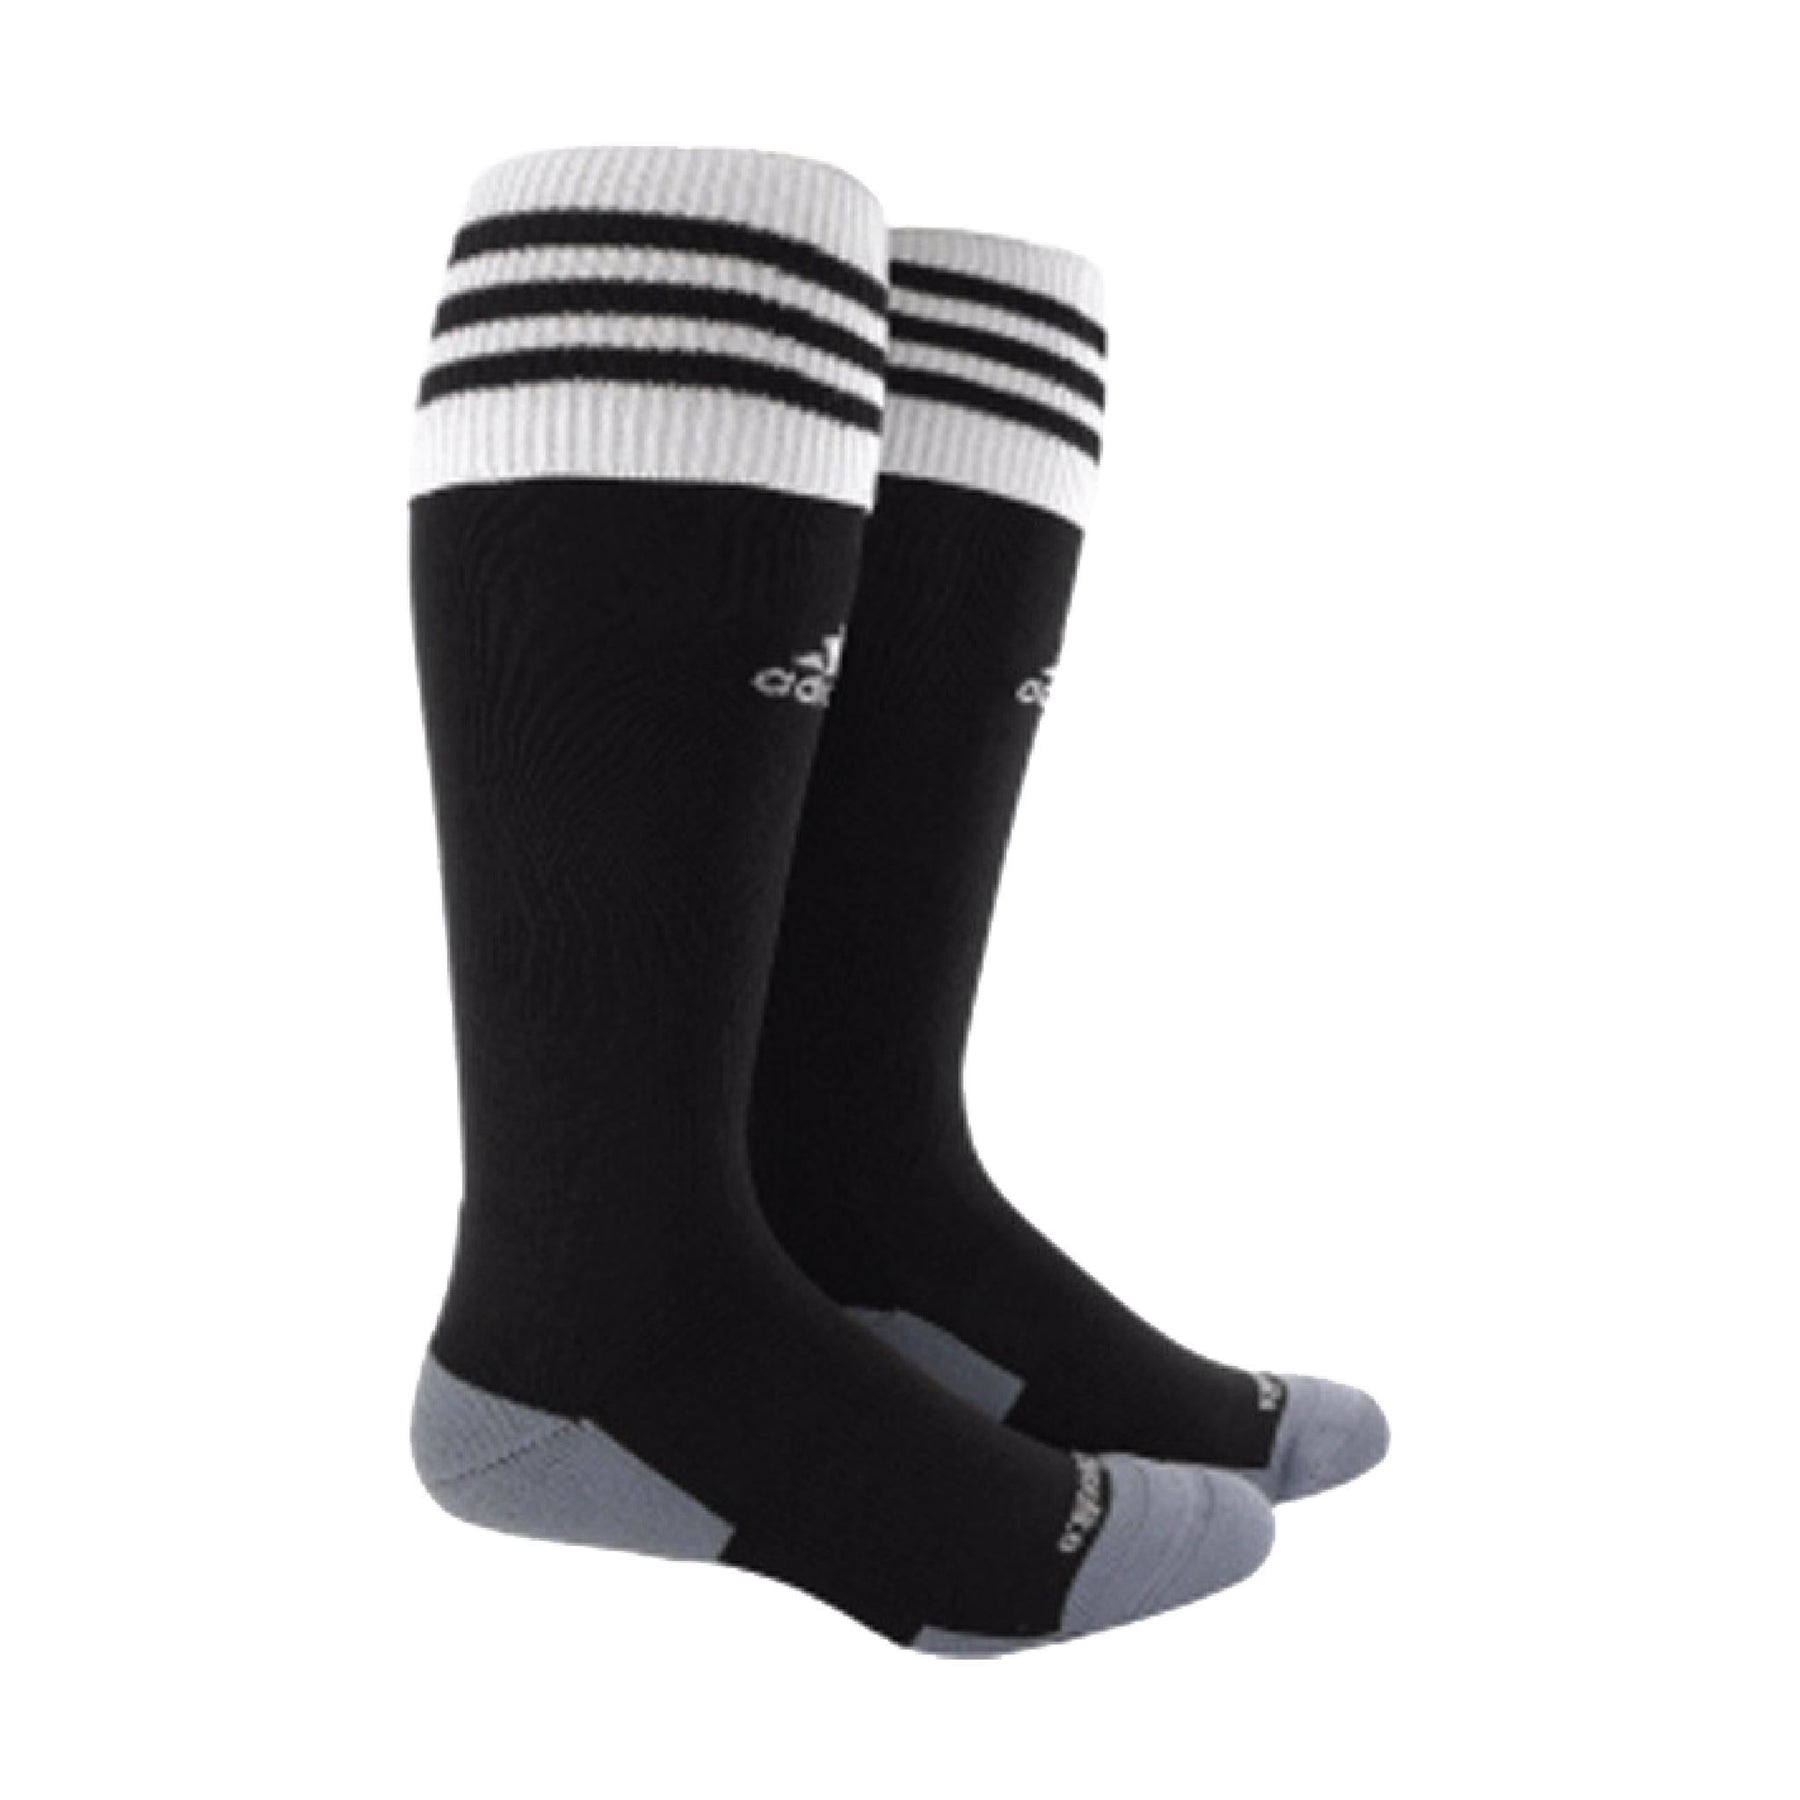 Adidas Soccer Socks | Goal Kick Soccer